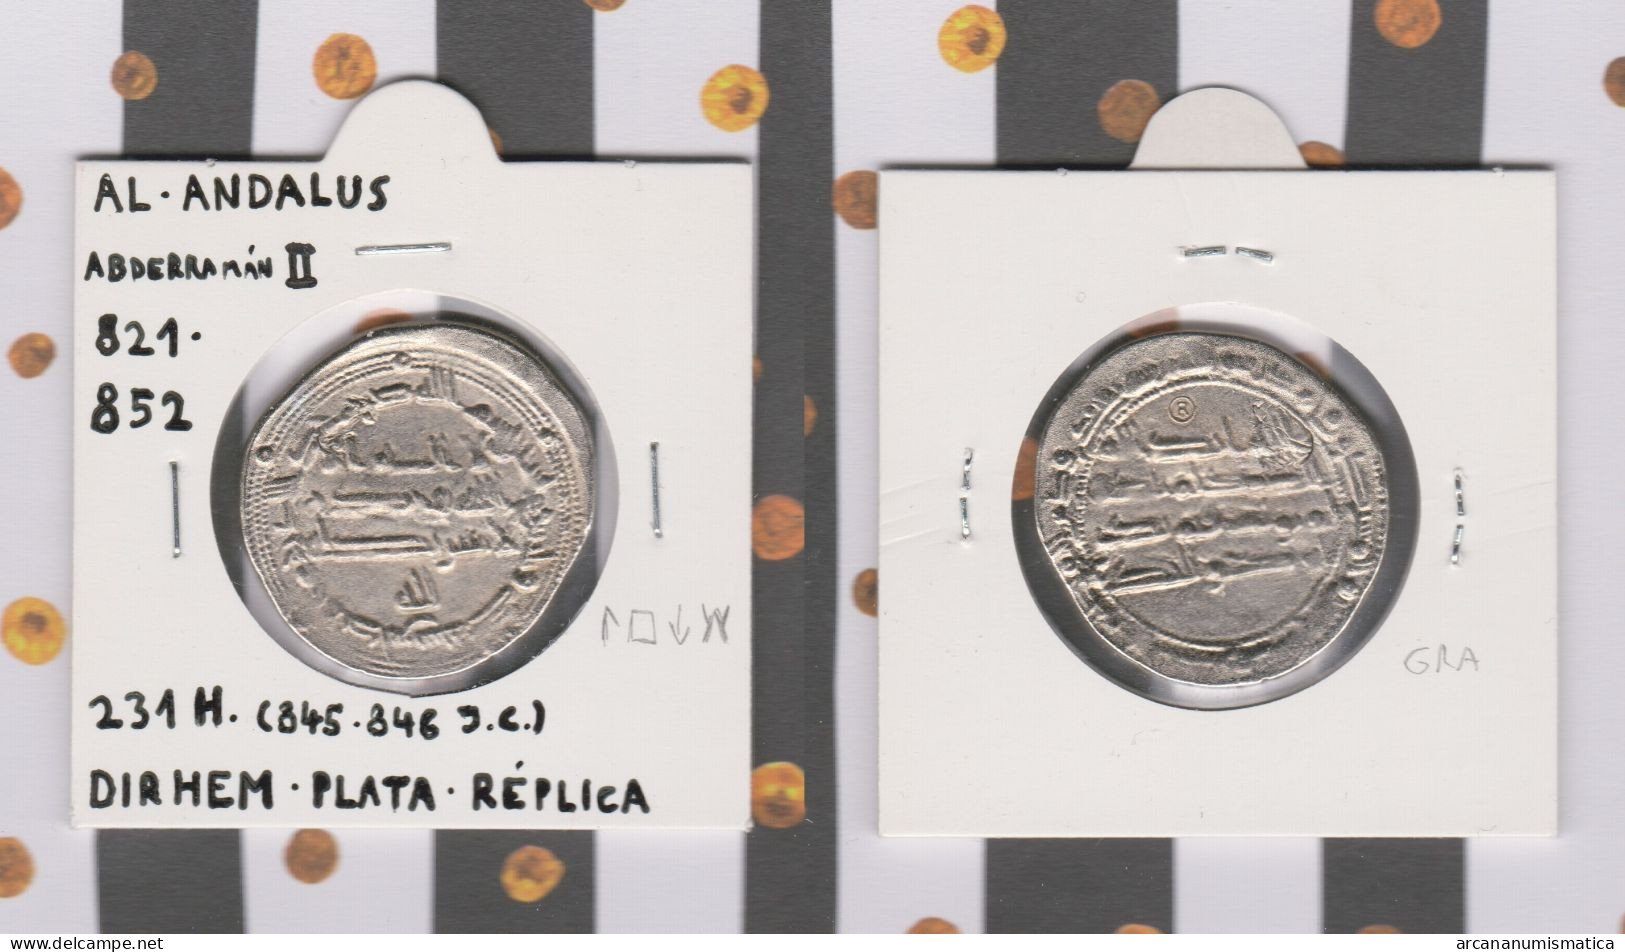 AL-ANDALUS  DIRHEM Plata  Abderraman II   Réplica   DL-13.417 - Monedas Falsas